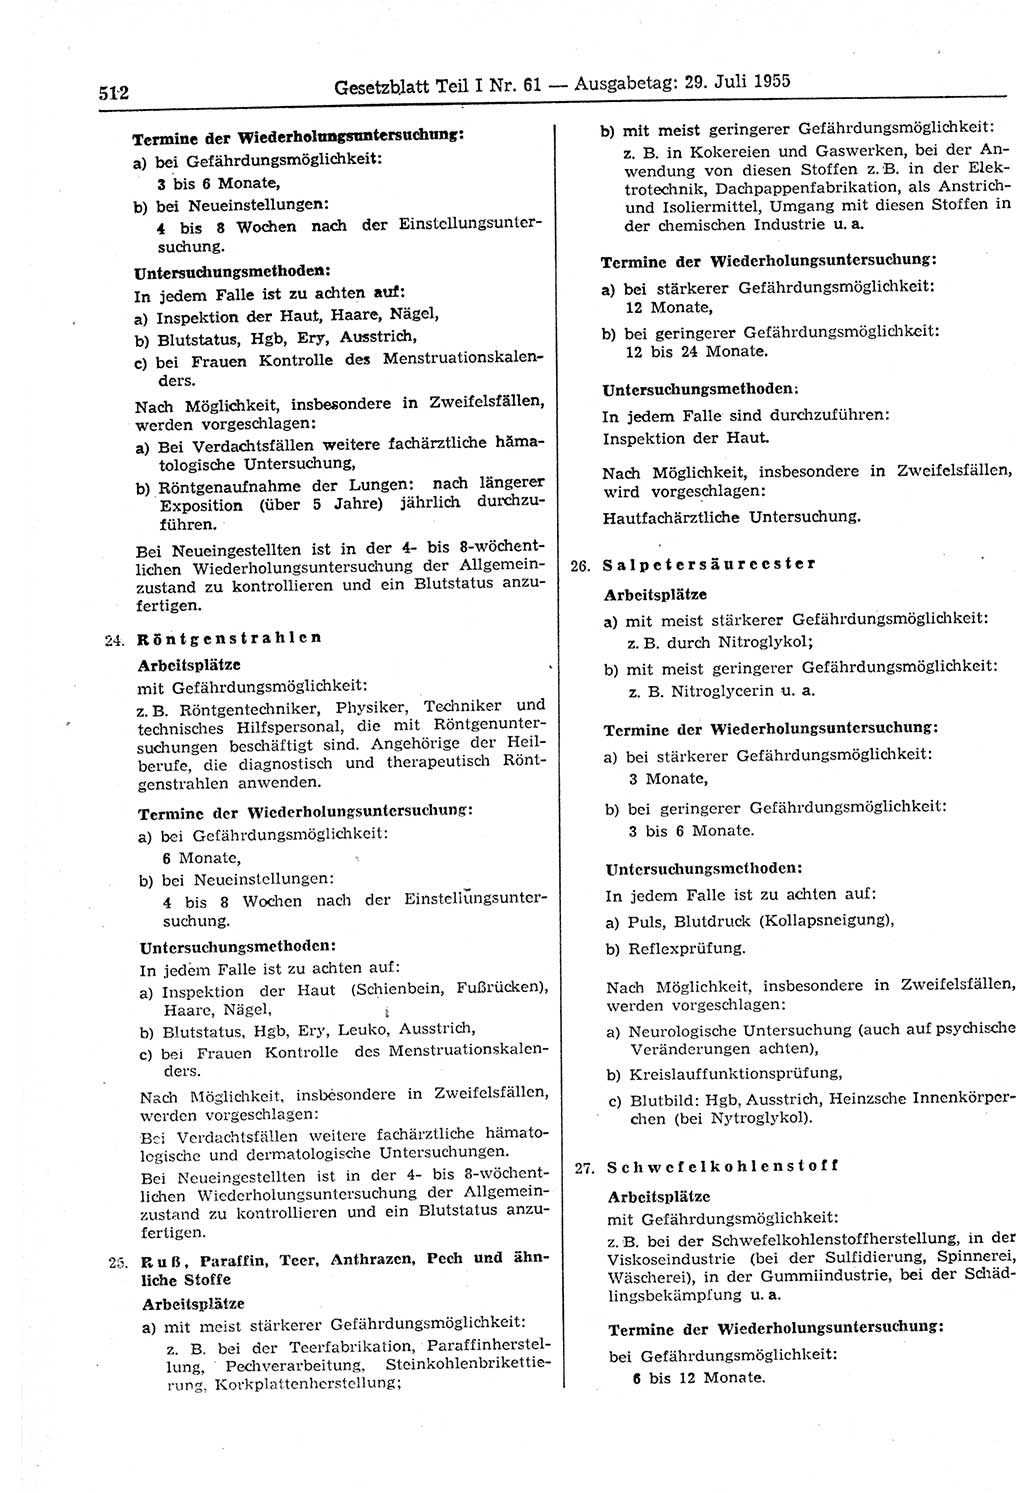 Gesetzblatt (GBl.) der Deutschen Demokratischen Republik (DDR) Teil Ⅰ 1955, Seite 512 (GBl. DDR Ⅰ 1955, S. 512)